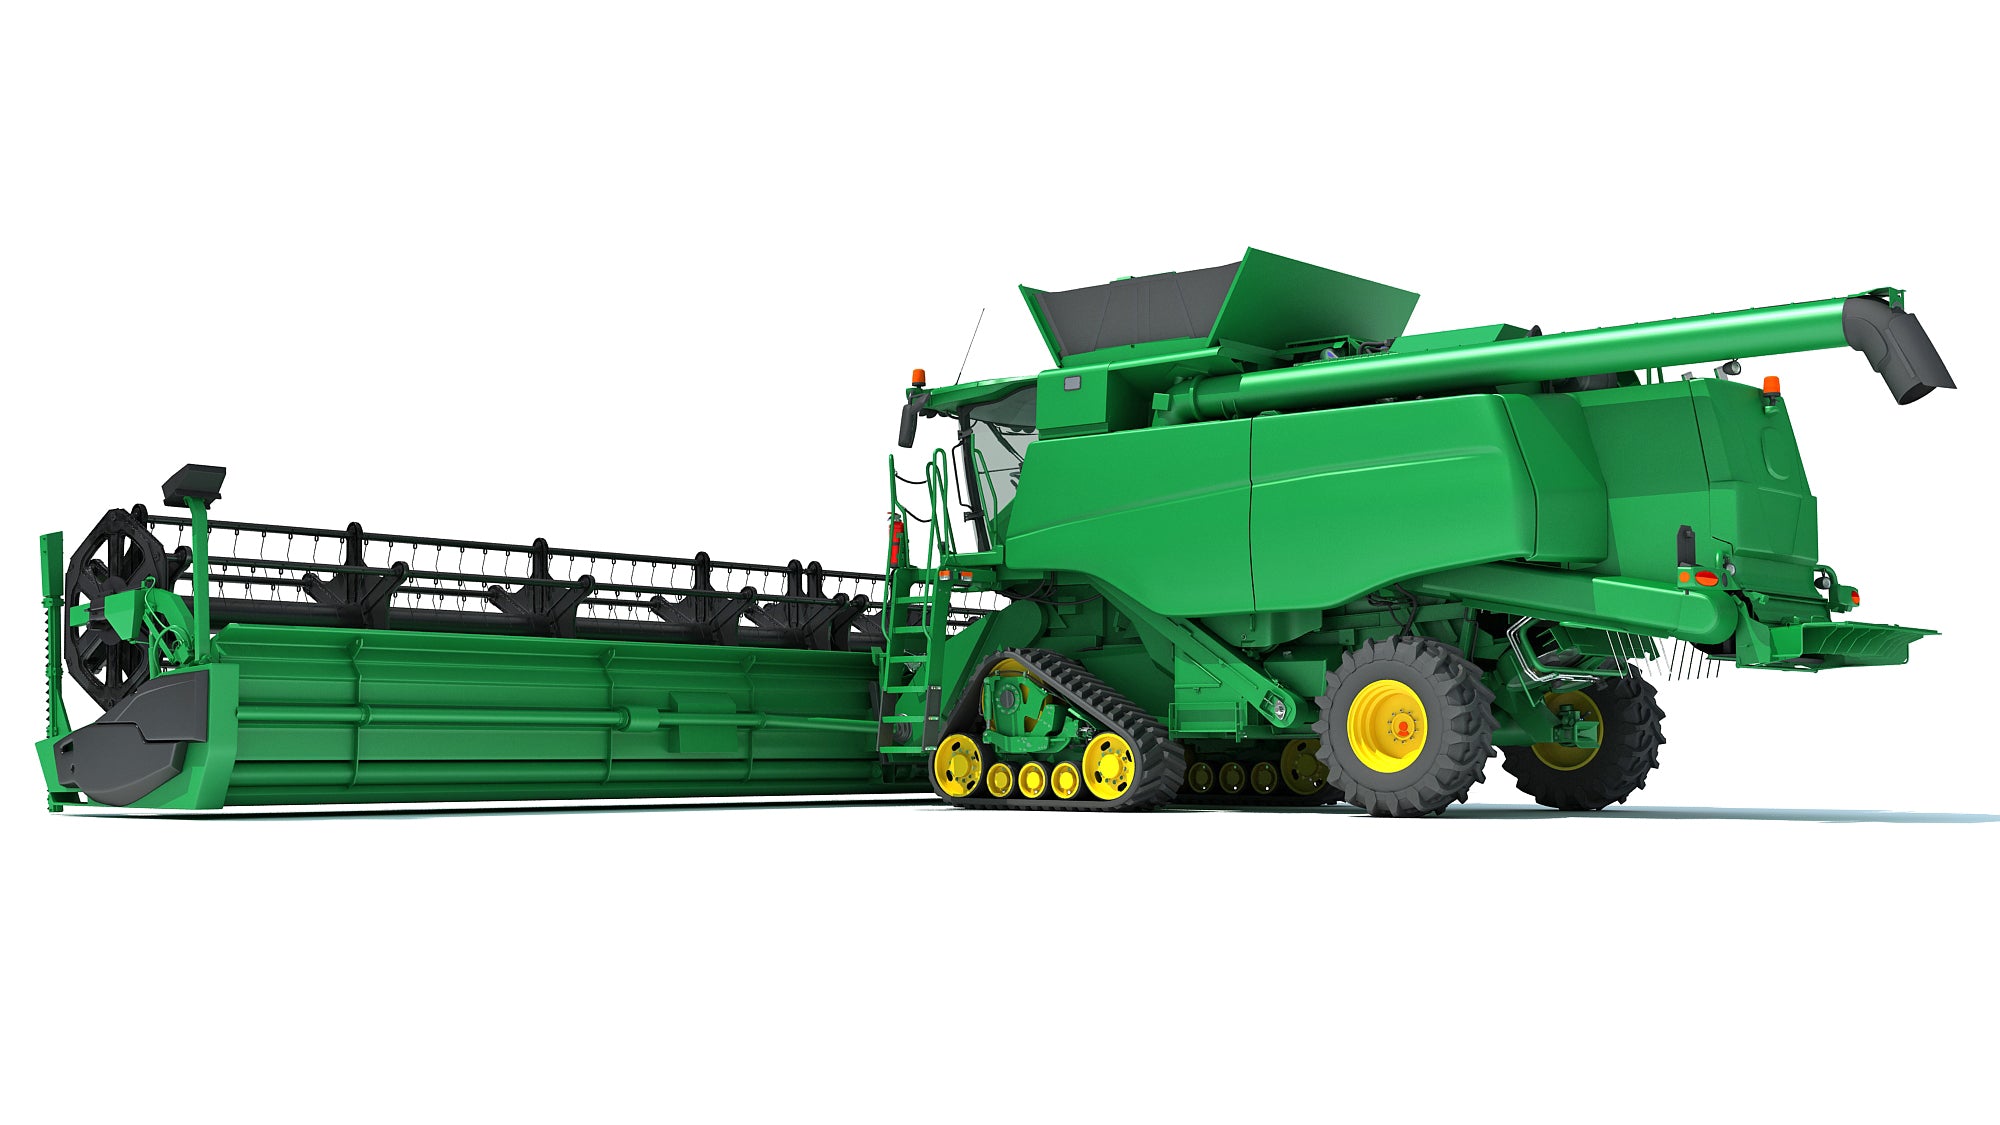 Green Combine Harvester